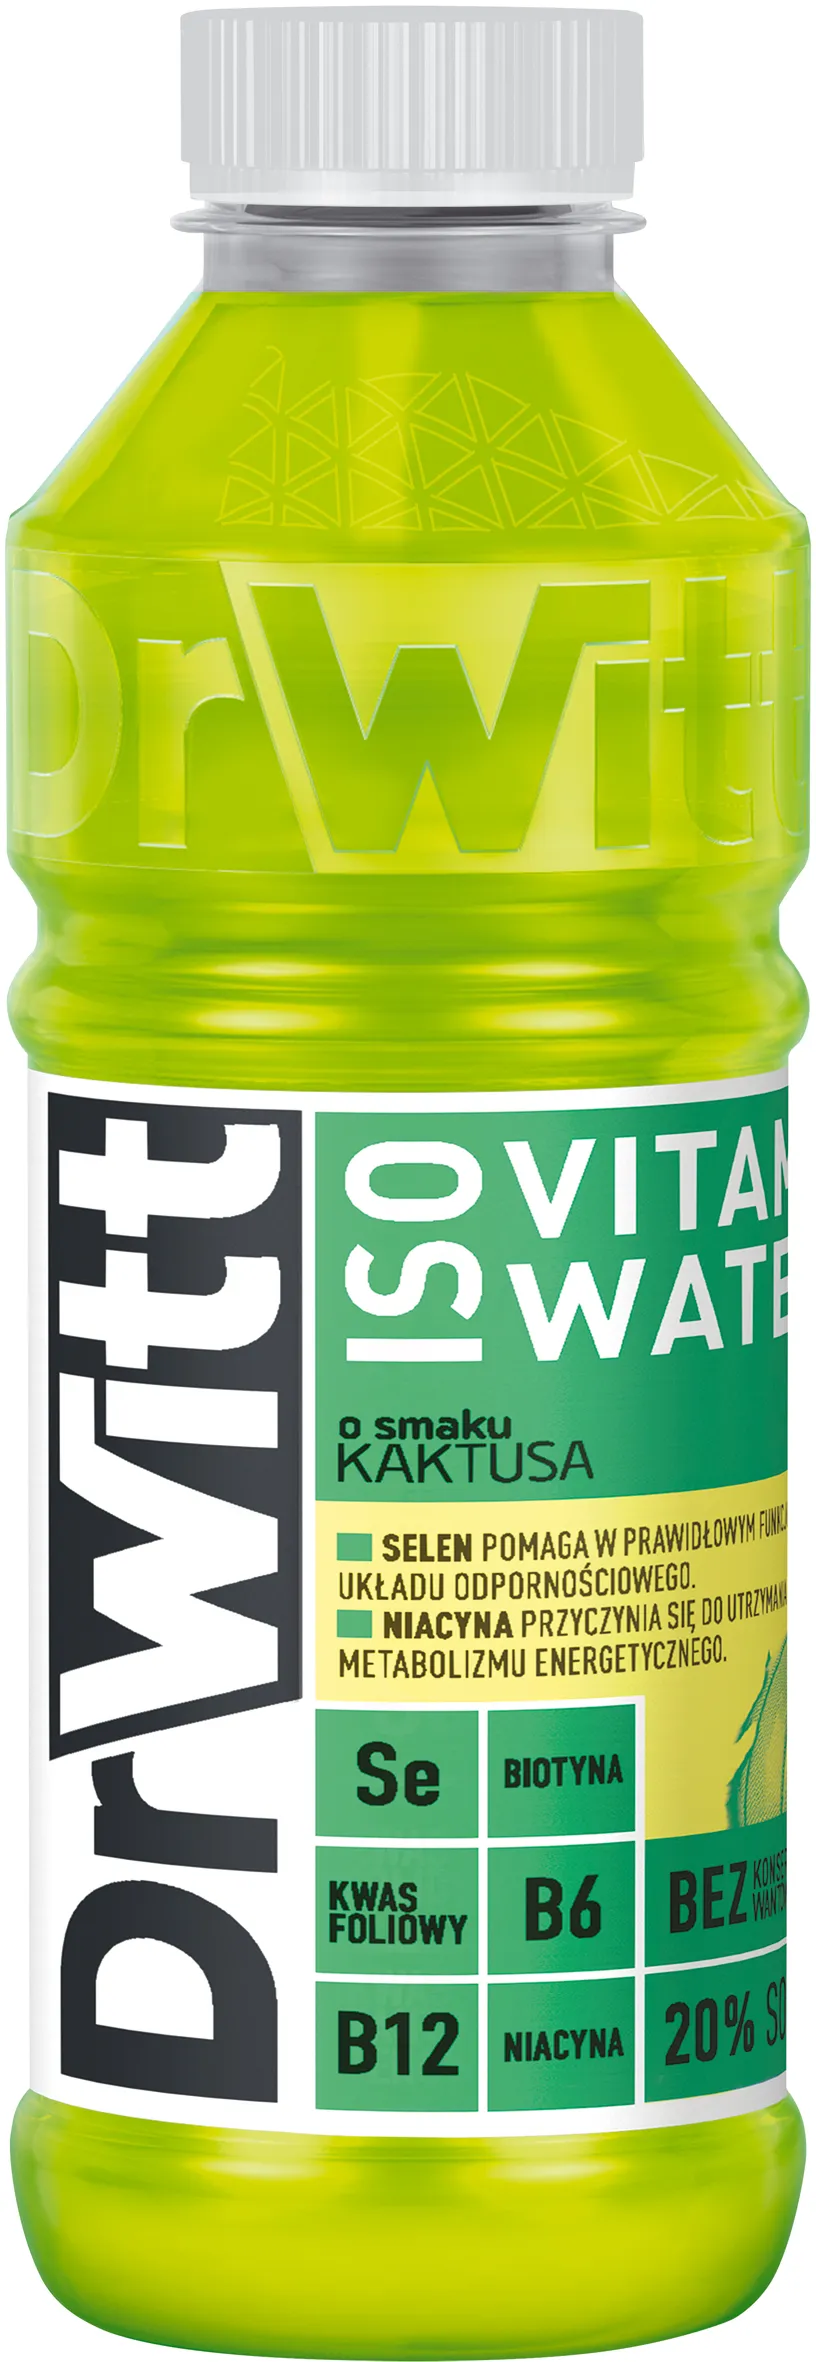 DrWitt ISO Vitamin Water napój izotoniczny, kaktus-jabłko, 550 ml